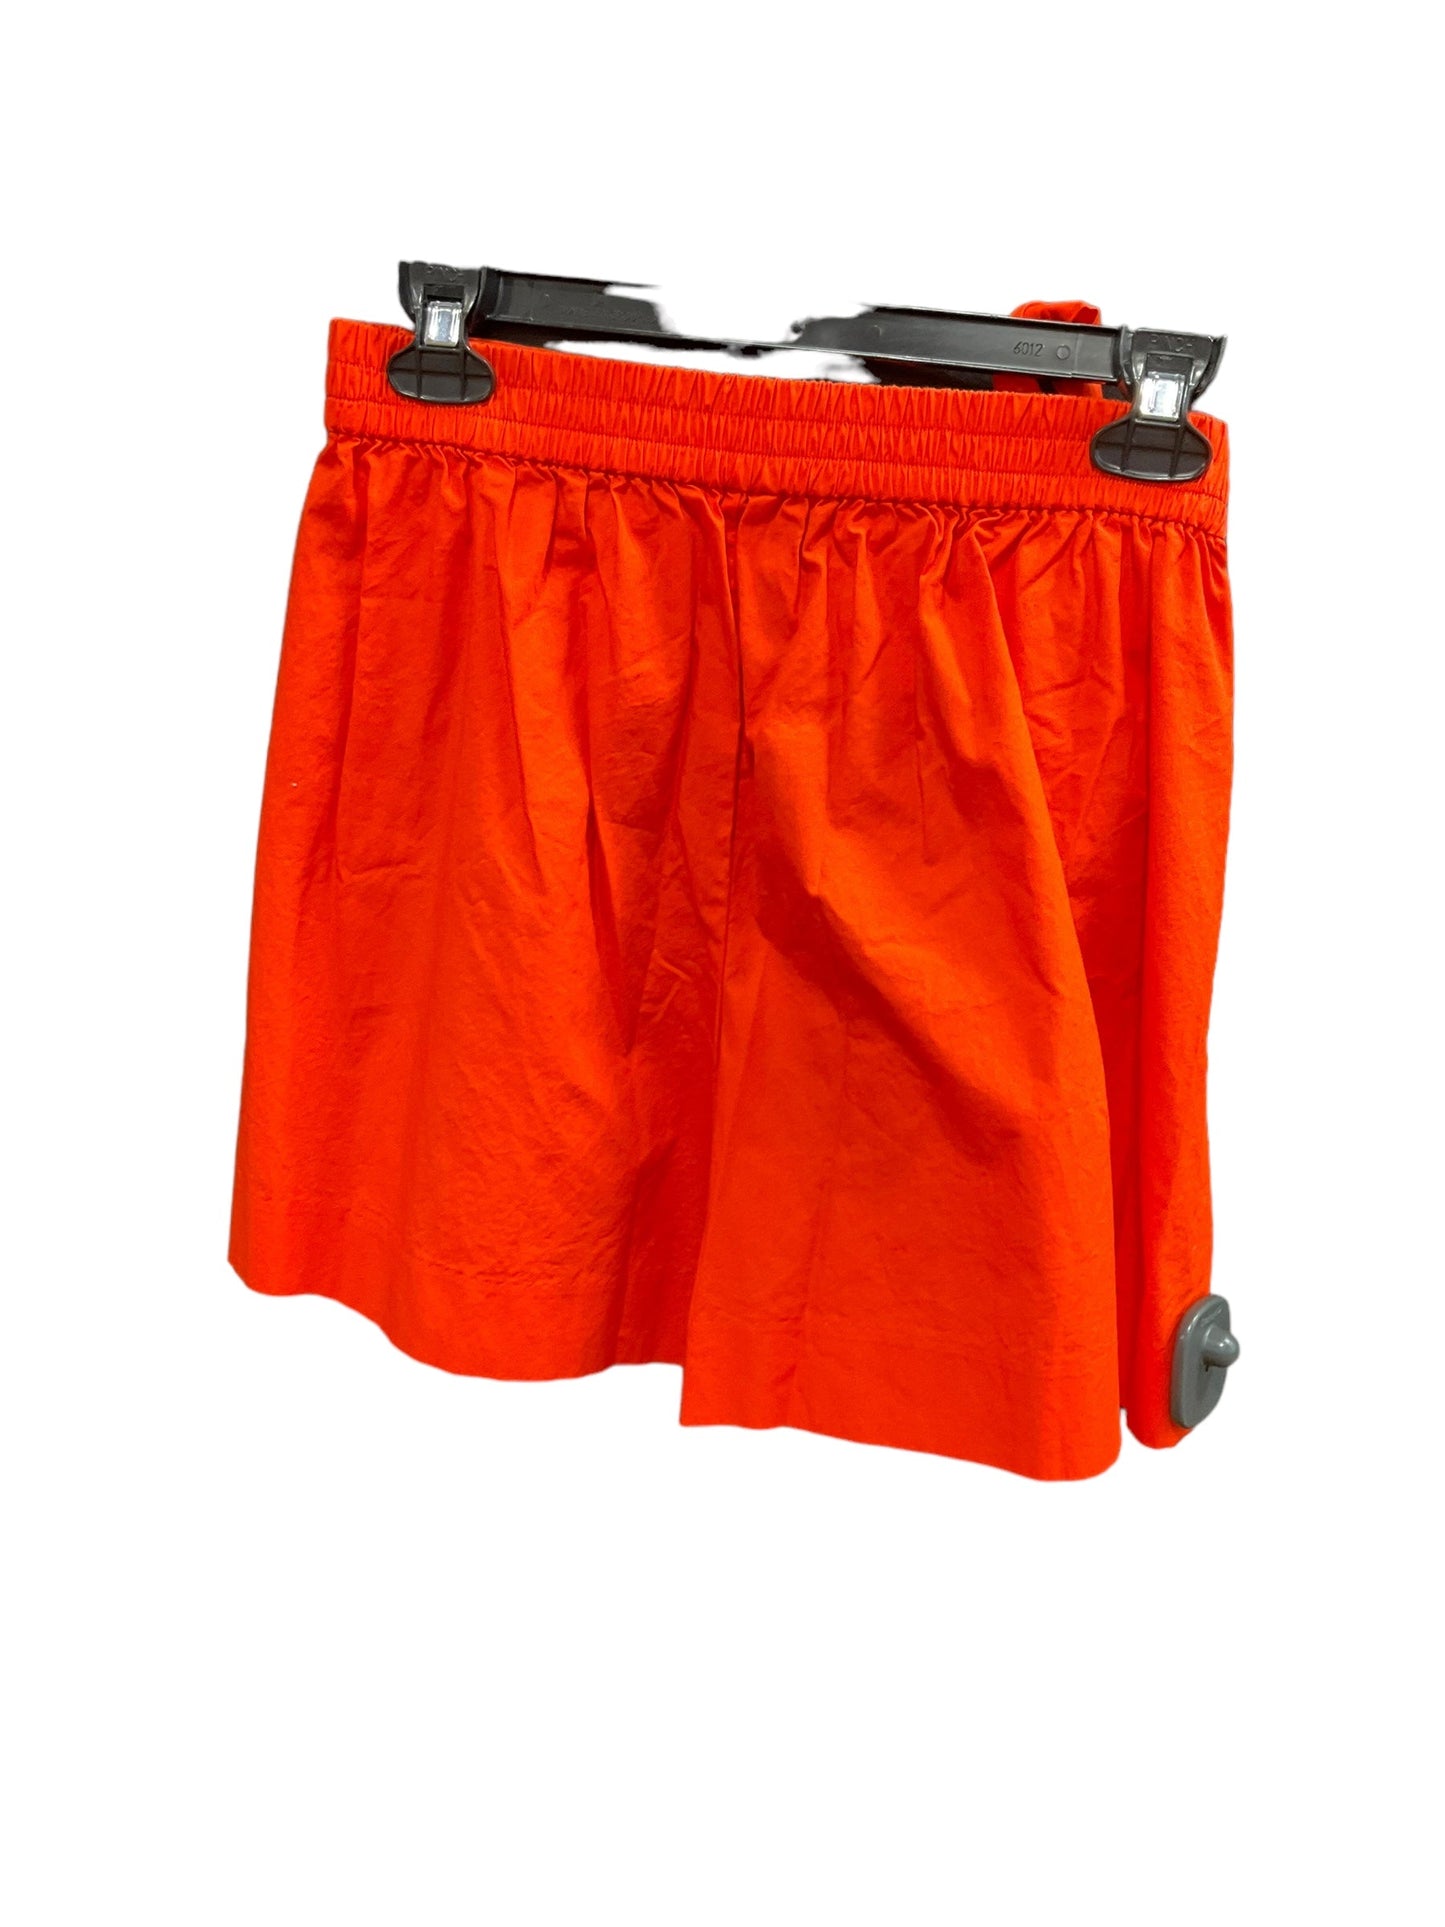 Orange Shorts J Crew O, Size 4